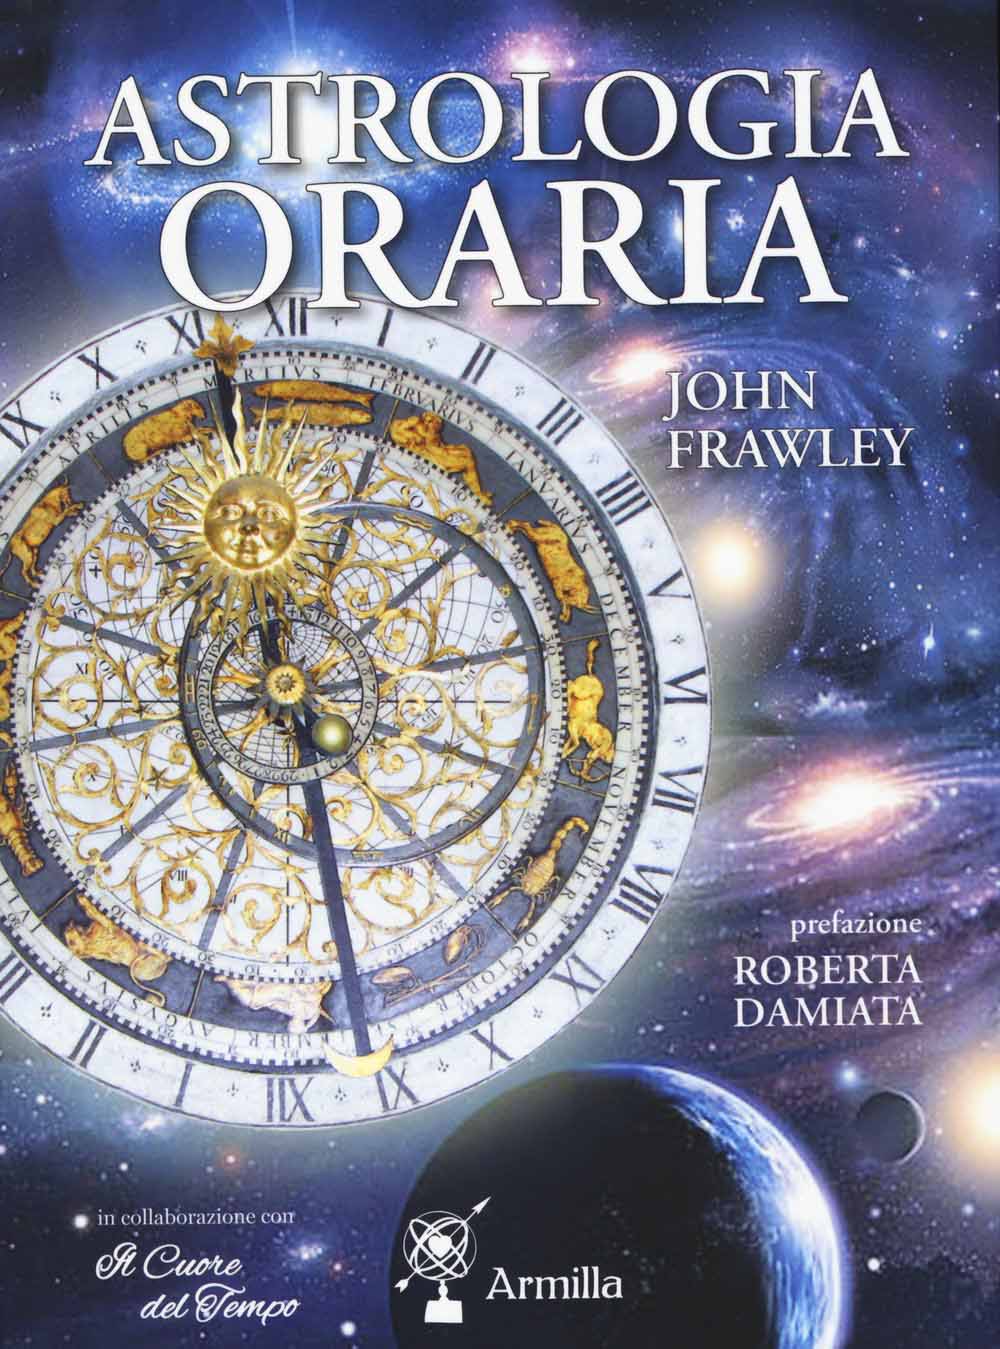 Libri John Frawley - Astrologia Oraria NUOVO SIGILLATO, EDIZIONE DEL 10/12/2015 SUBITO DISPONIBILE